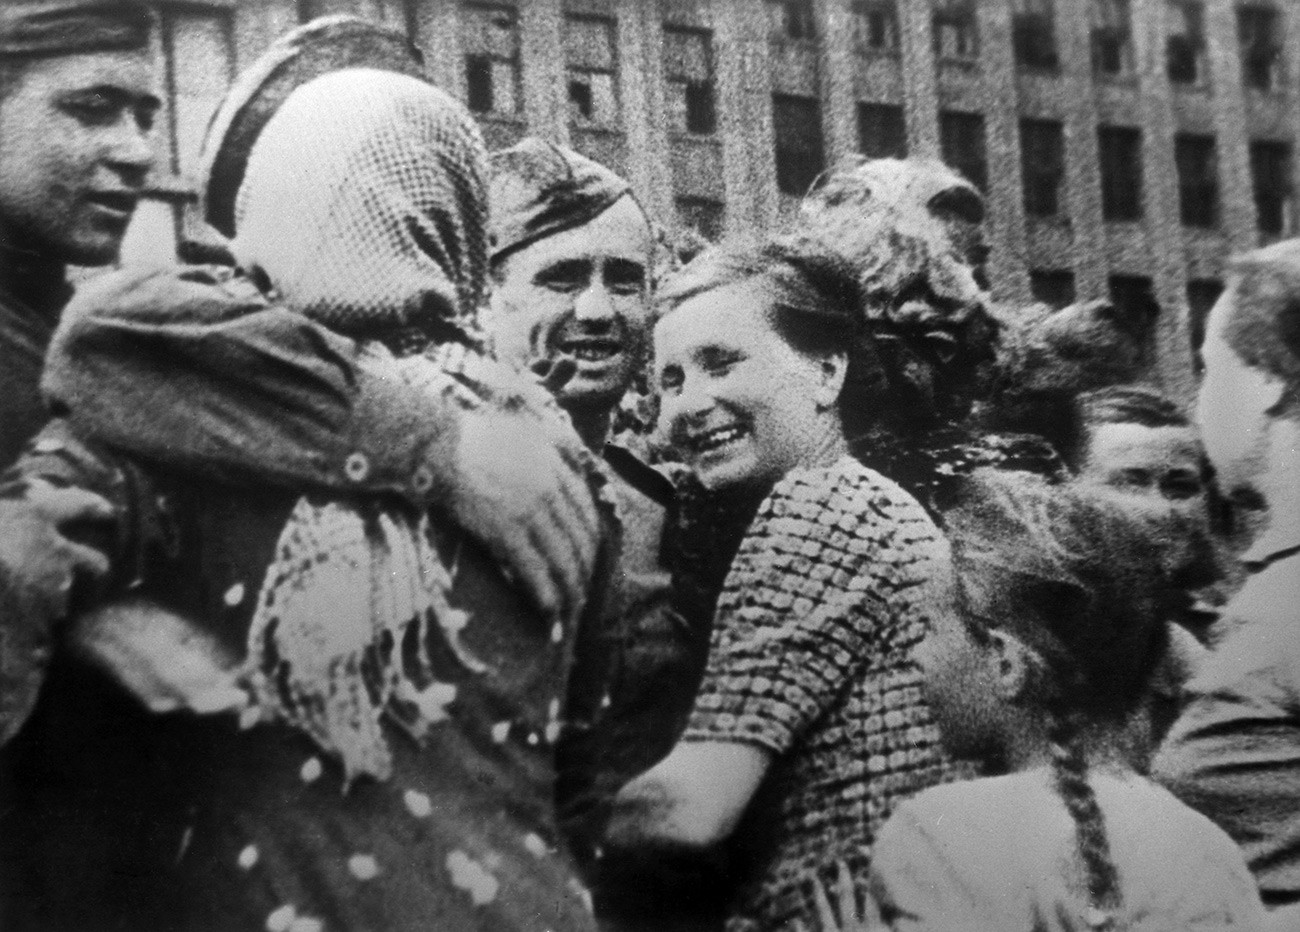 Велики отаџбински рат 1941-1945. Белоруска офанзивна операција „Багратион“ од 23. јуна до 29. августа 1944. године. Житељи Минска дочекују совјетске ратнике (Минска офанзивна операција од 29. јуна до 4. јула 1944. године).